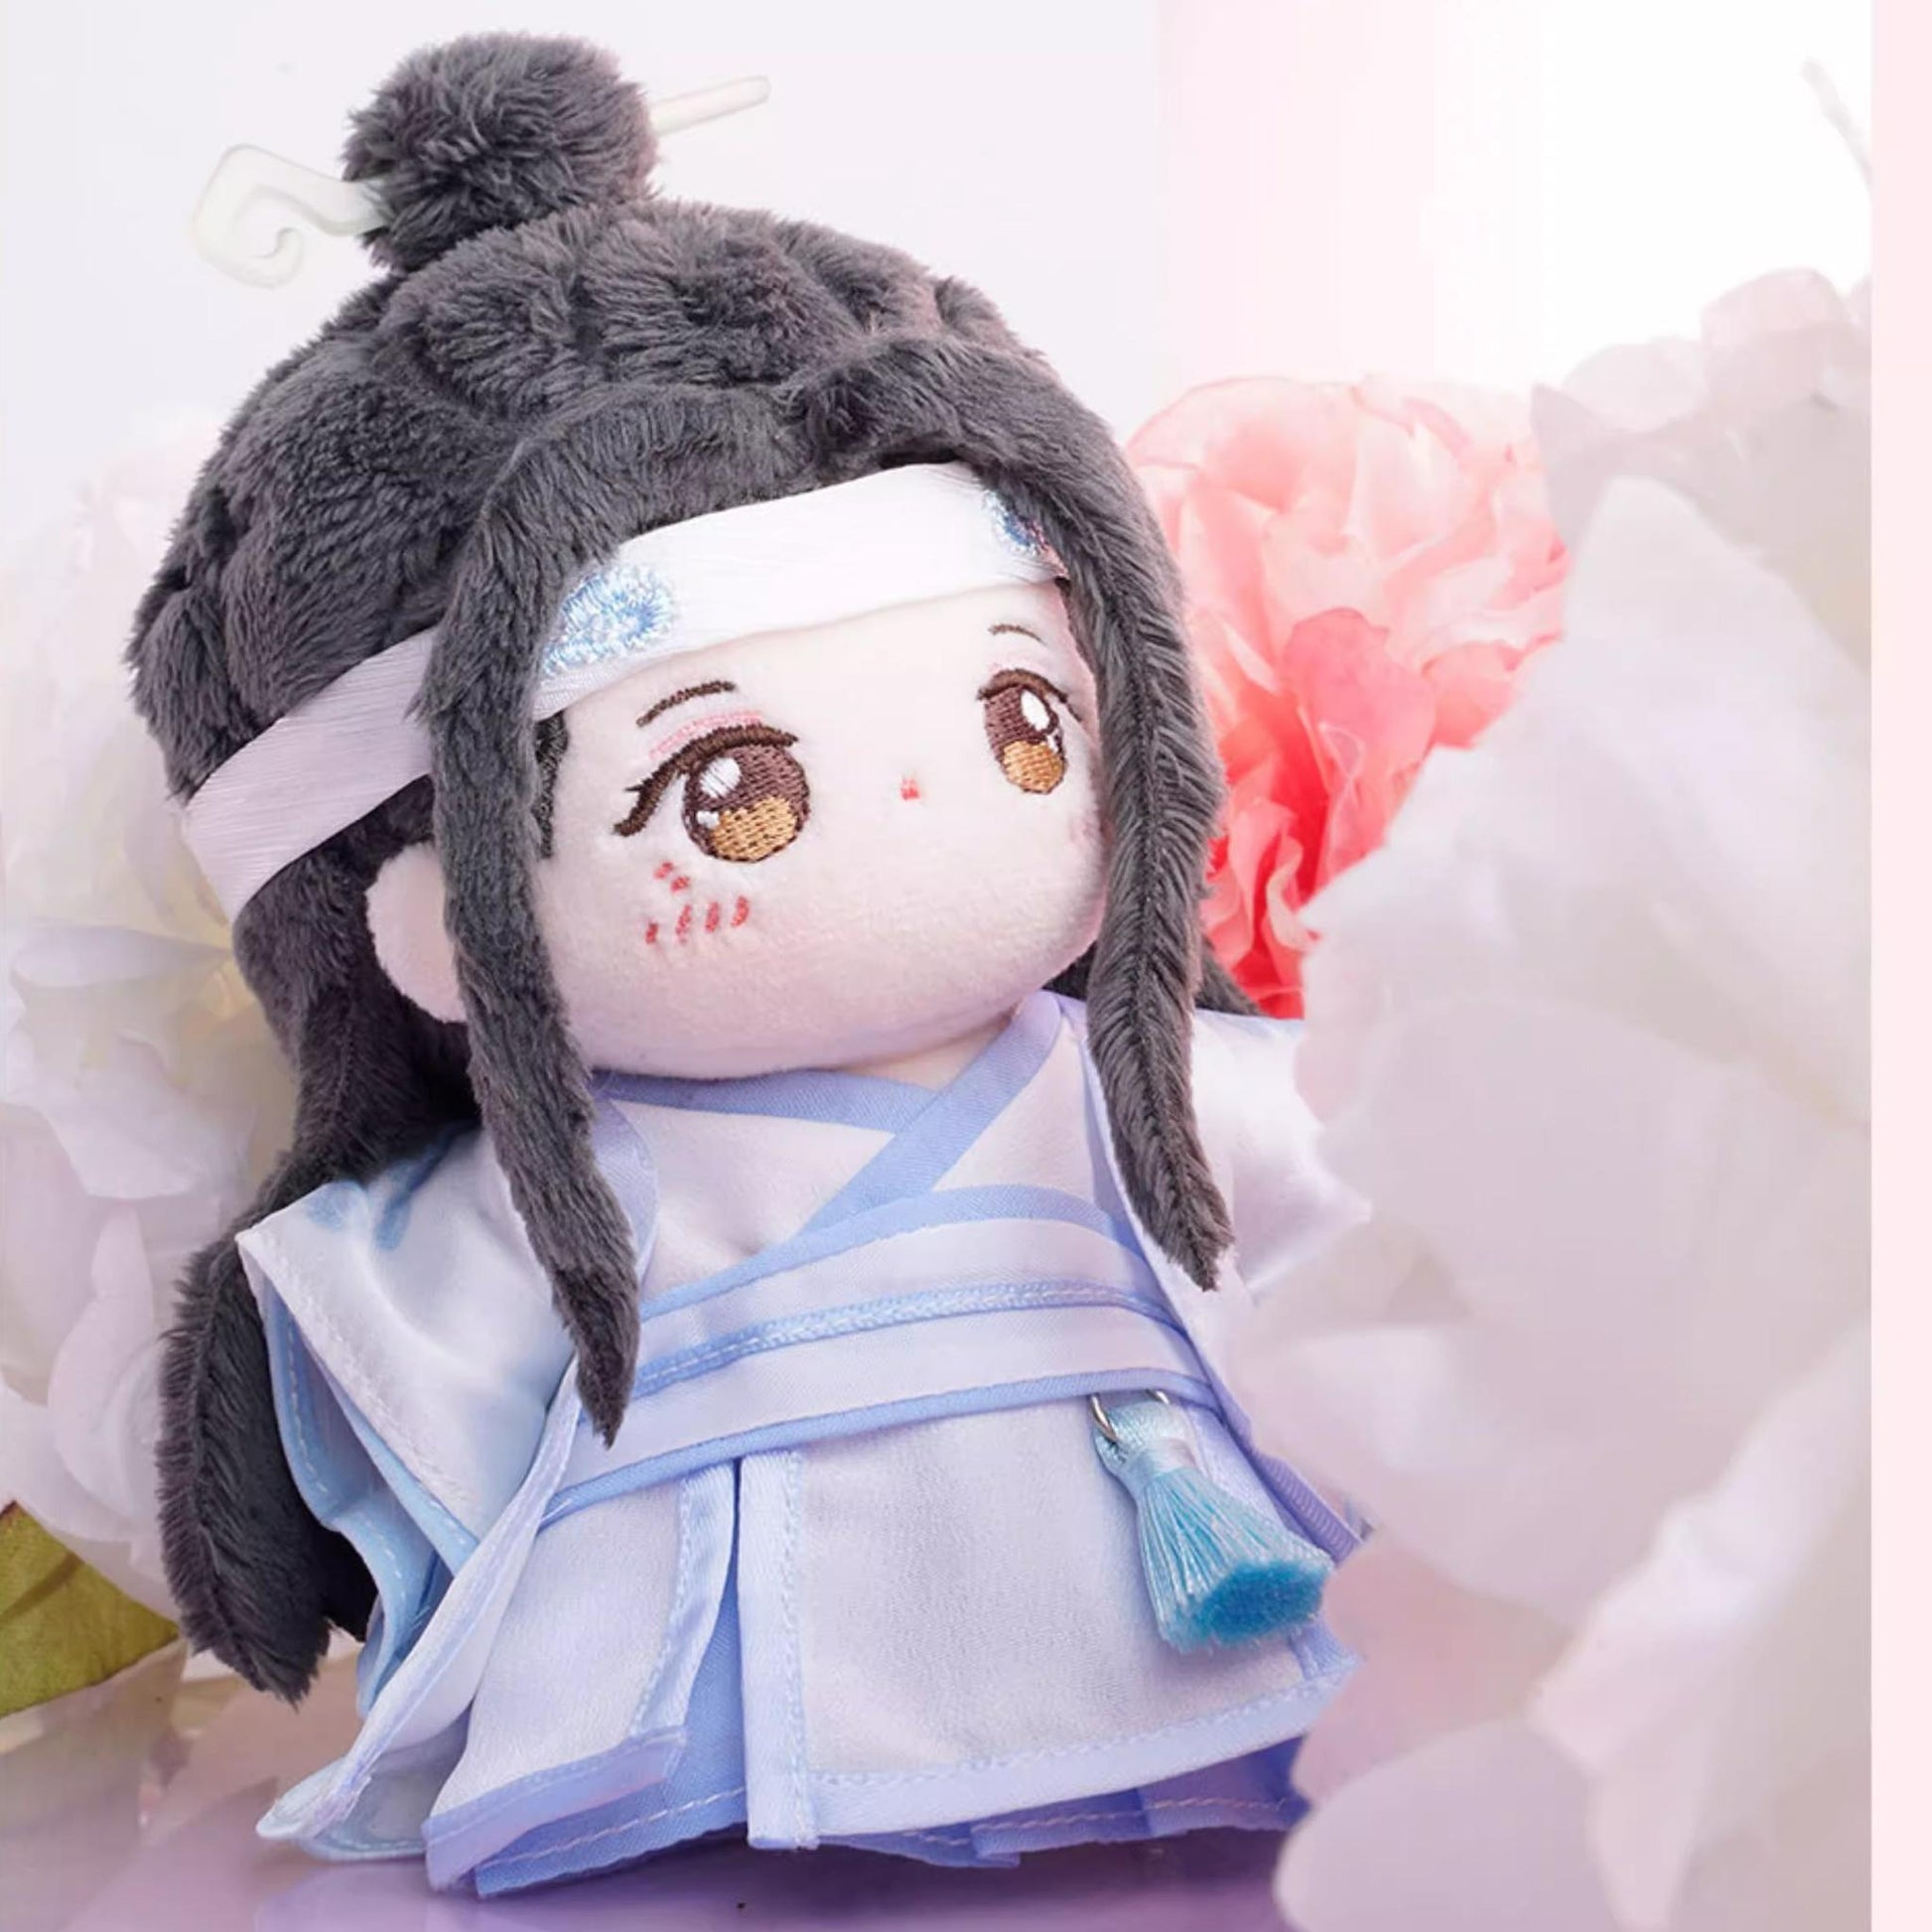 MDZS Cotton Dolls Lan Wangji Wei Wuxian Plush Doll 10cm 33288:443395